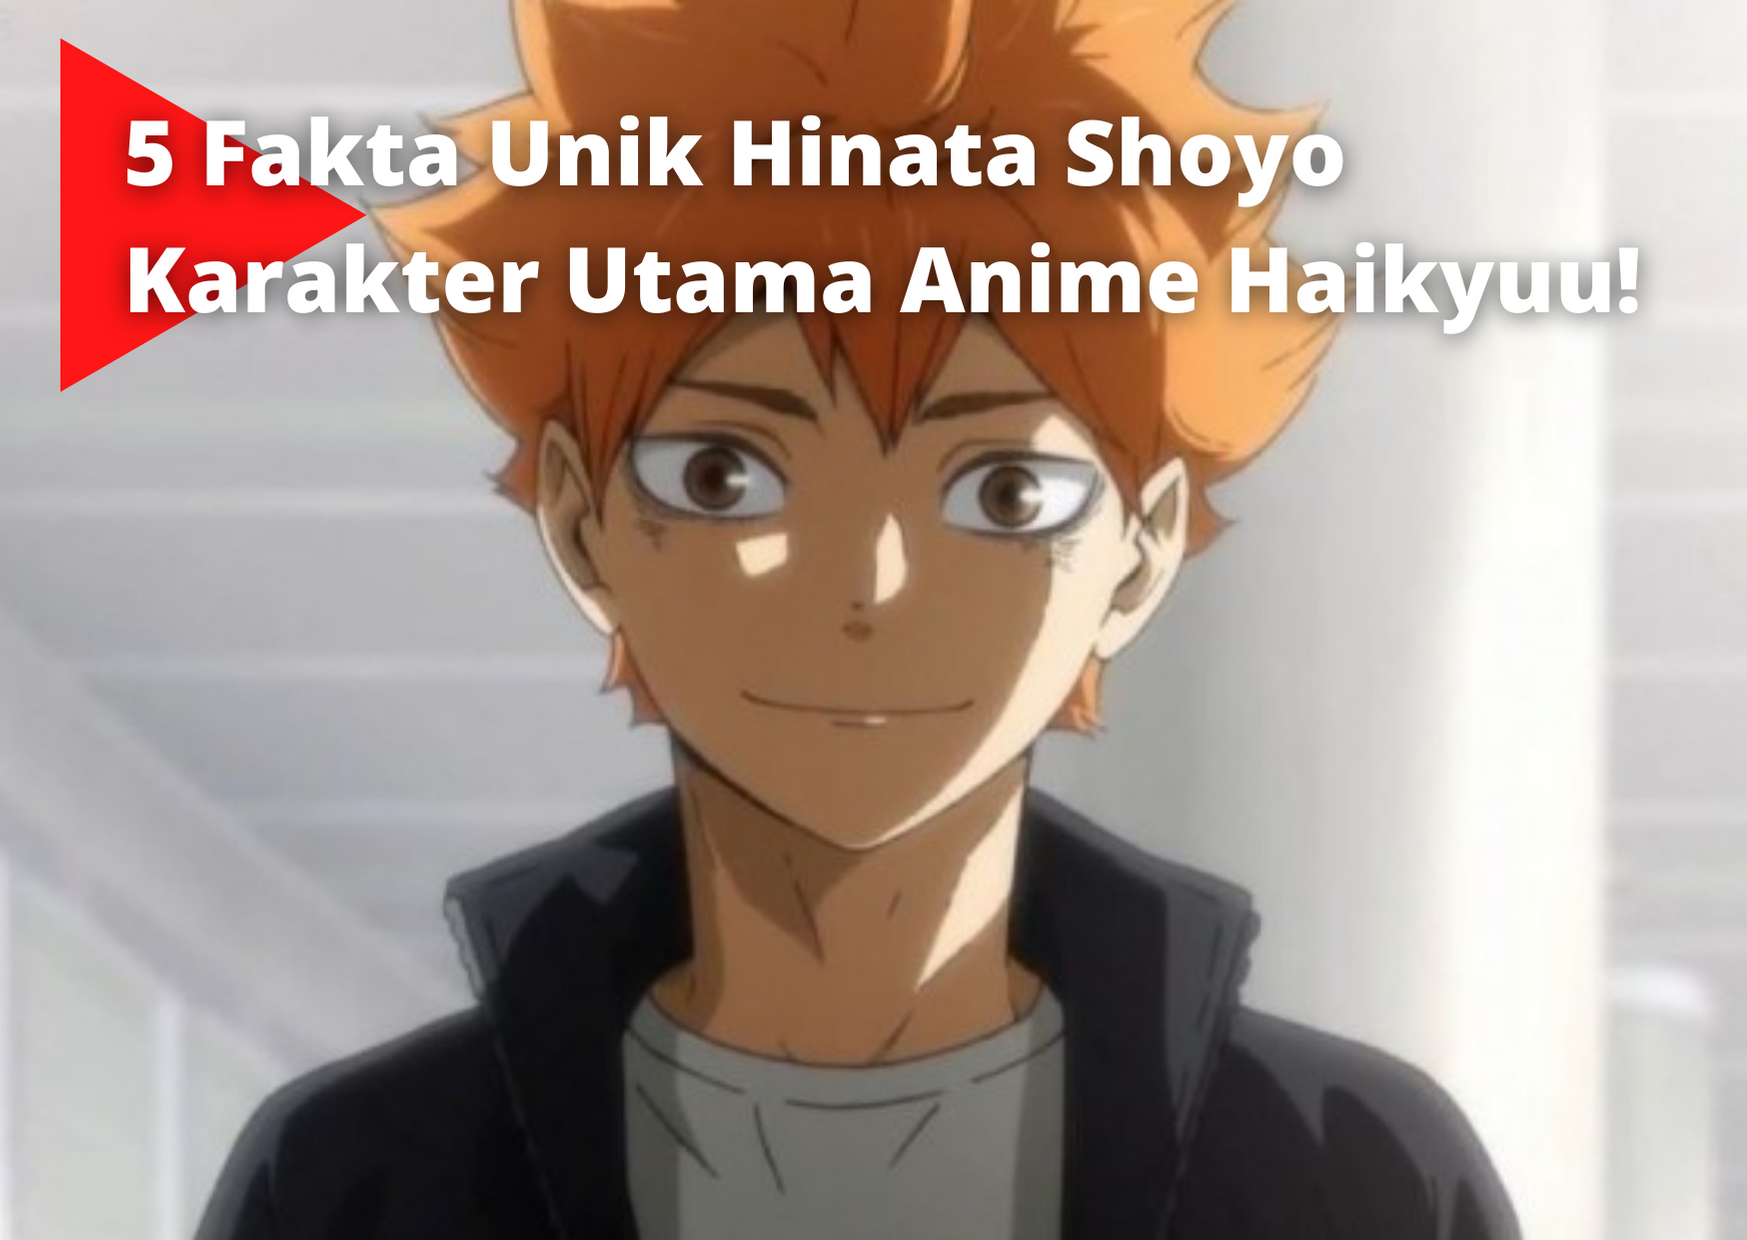 5 Fakta Unik Hinata Shoyo Karakter Utama Anime Haikyuu!